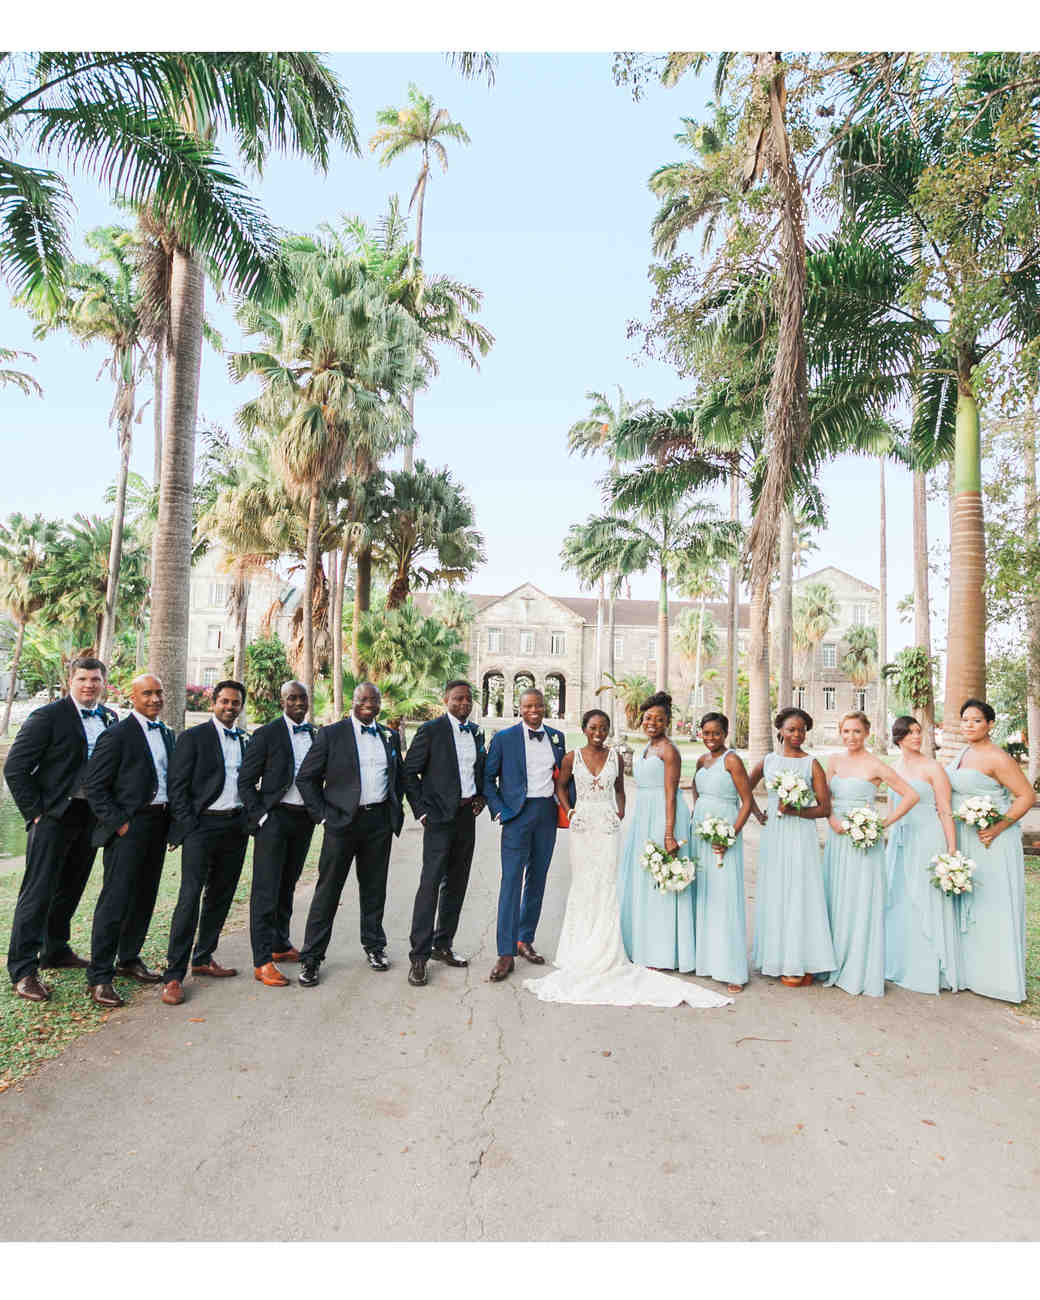 A Chic Island Wedding in Barbados Martha Stewart Weddings